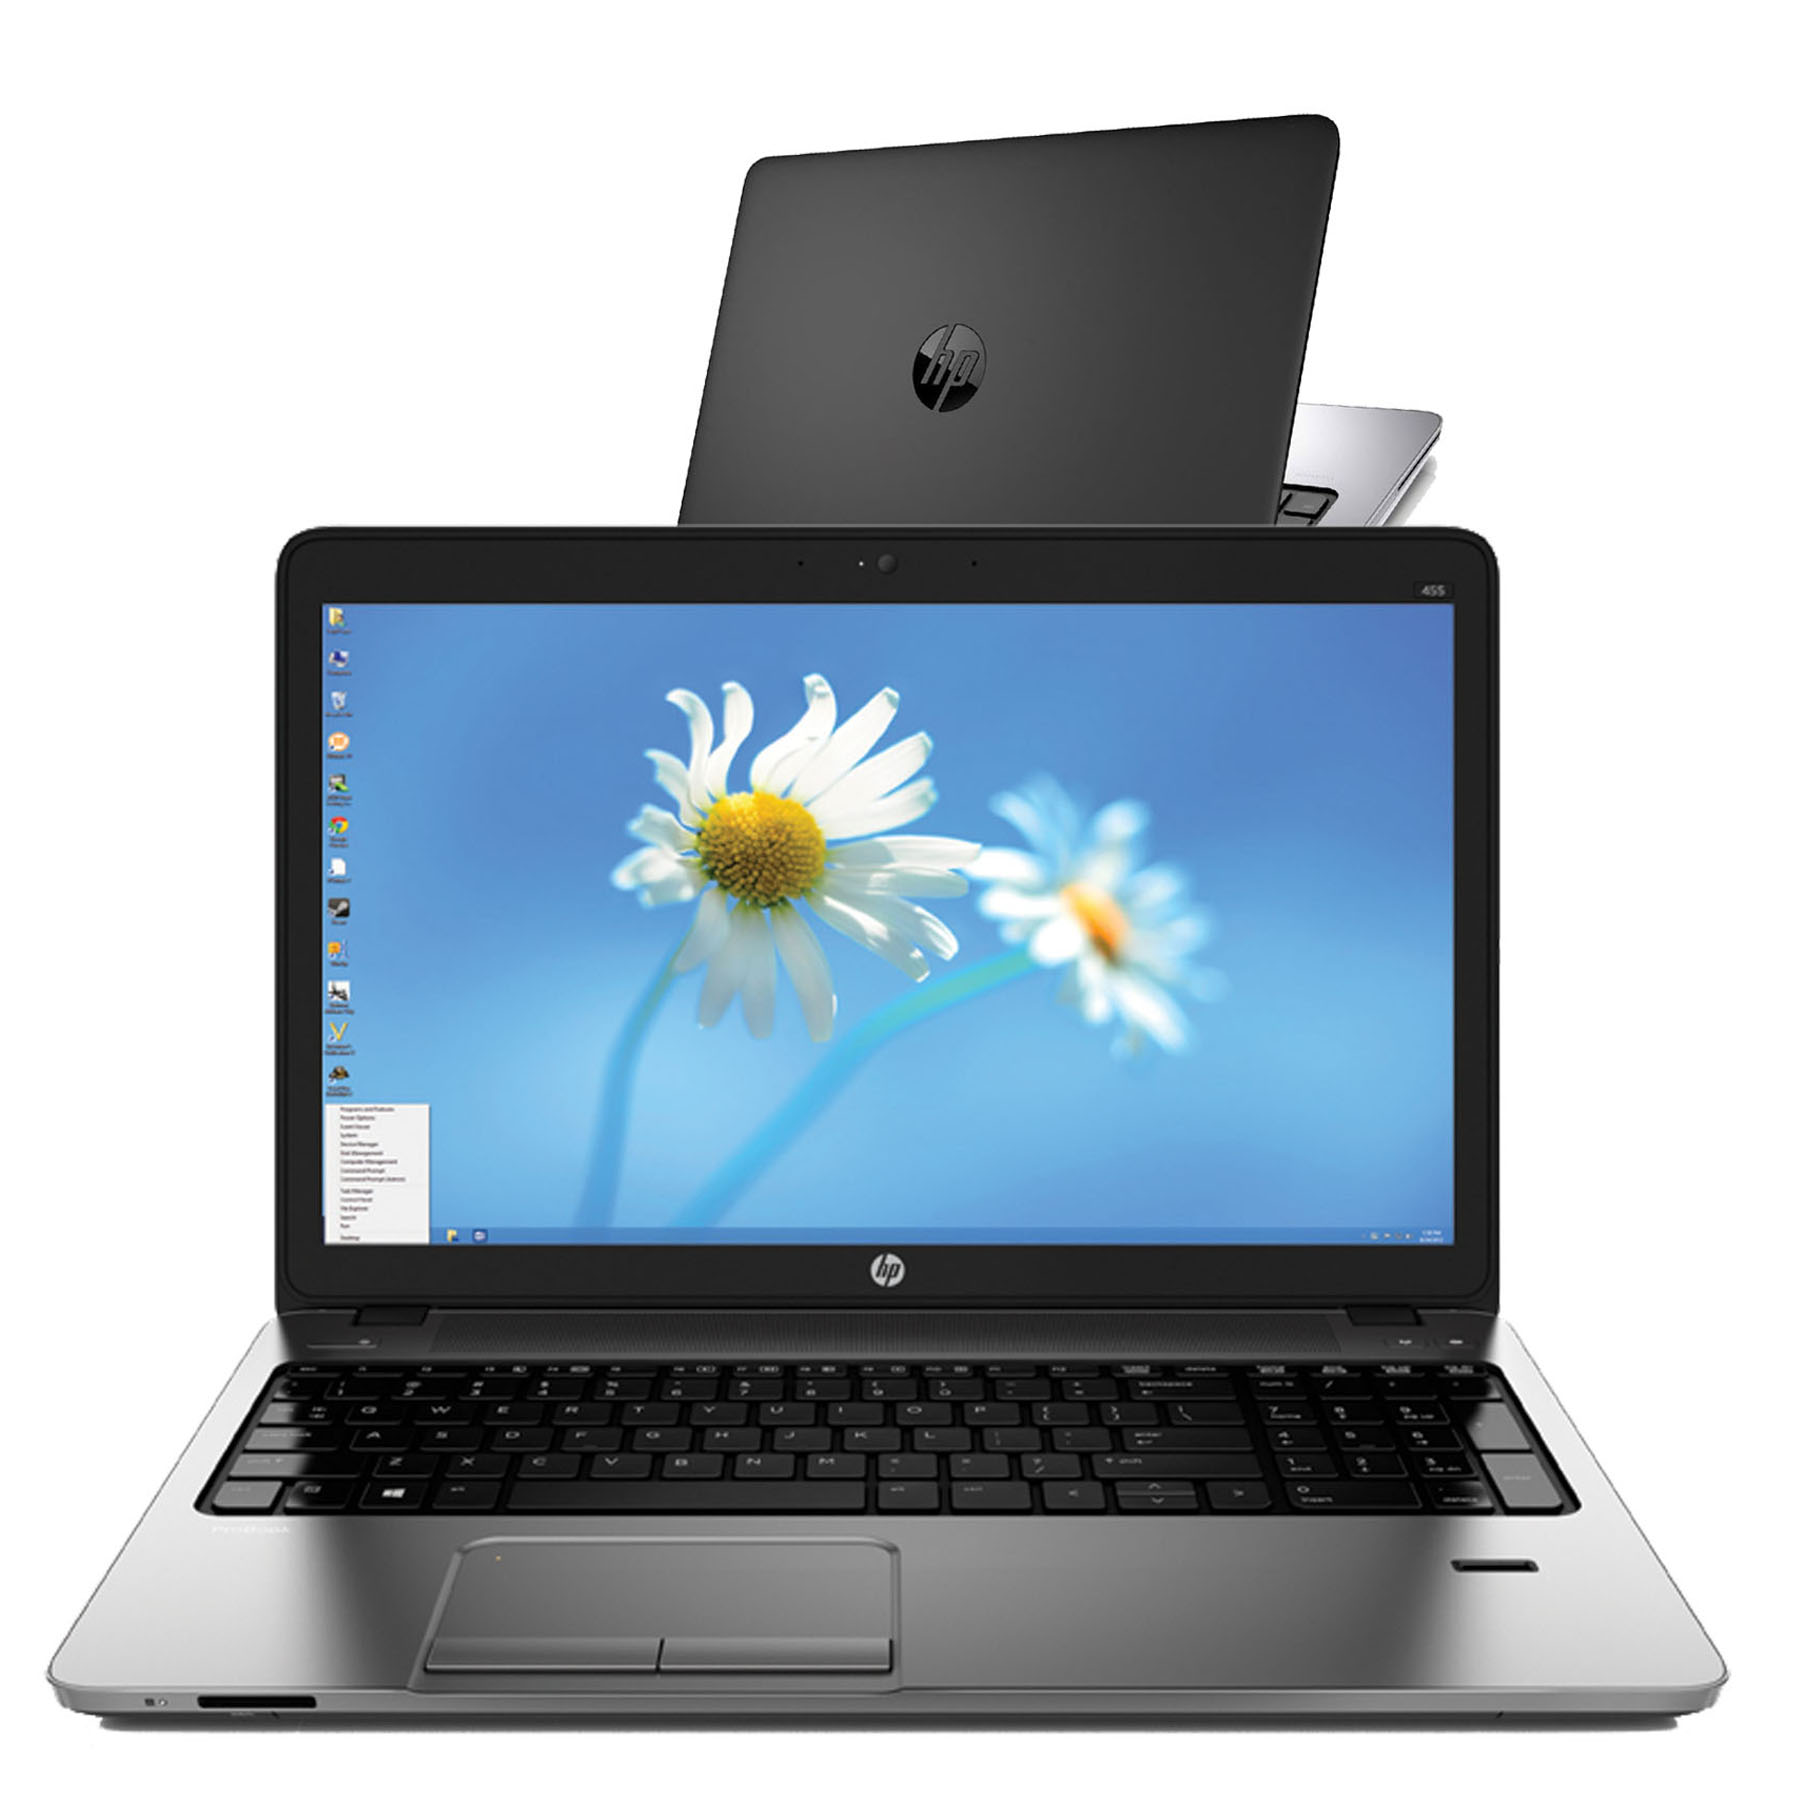 HP ProBook 450 G1 (Core i5-4200M, 4GB, 120GB, VGA intel HD4600, 15.6 HD)